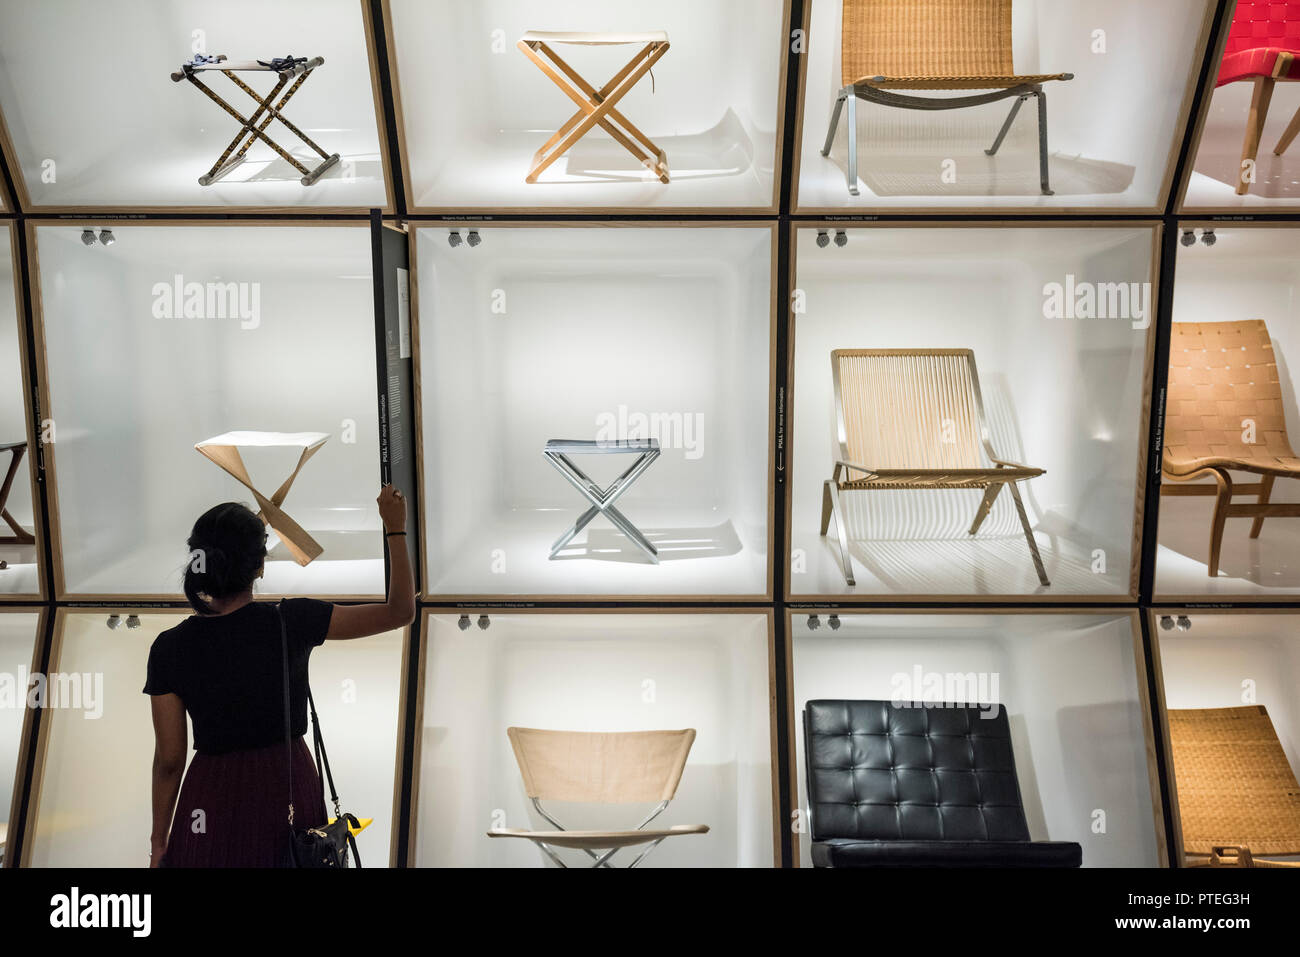 Copenhagen. Denmark. Display of iconic Danish chairs at the Danish Museum of Art & Design. Stock Photo